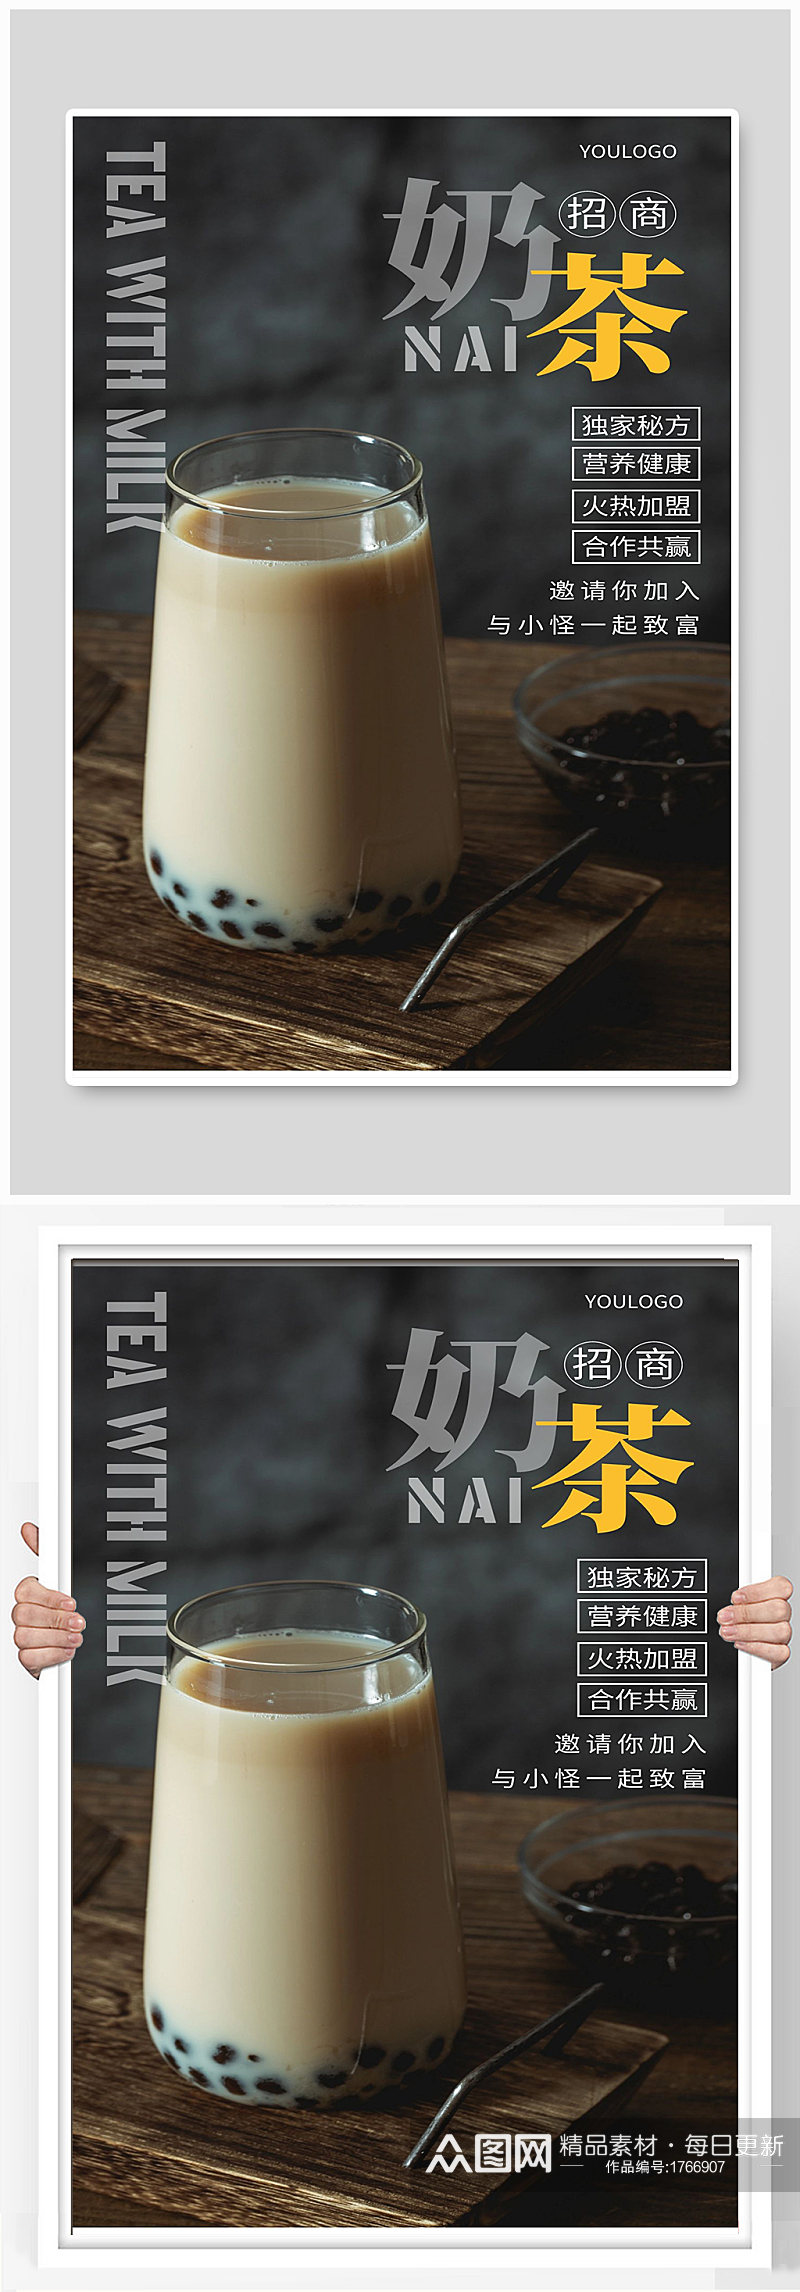 奶茶宣传海报设计制作素材